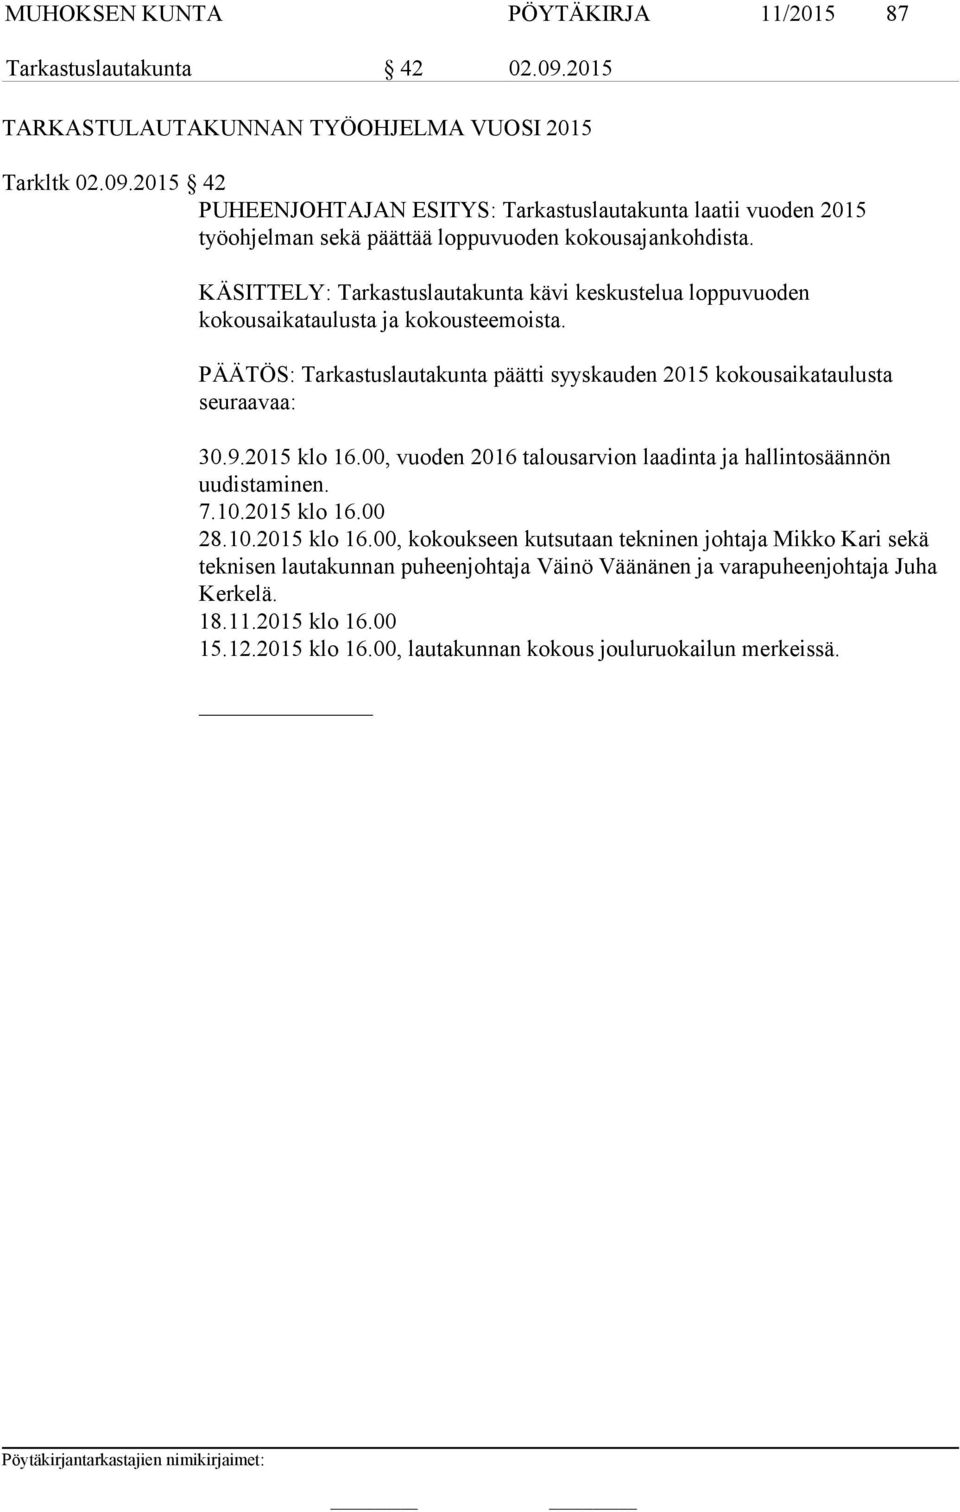 00, vuoden 2016 talousarvion laadinta ja hallintosäännön uudistaminen. 7.10.2015 klo 16.